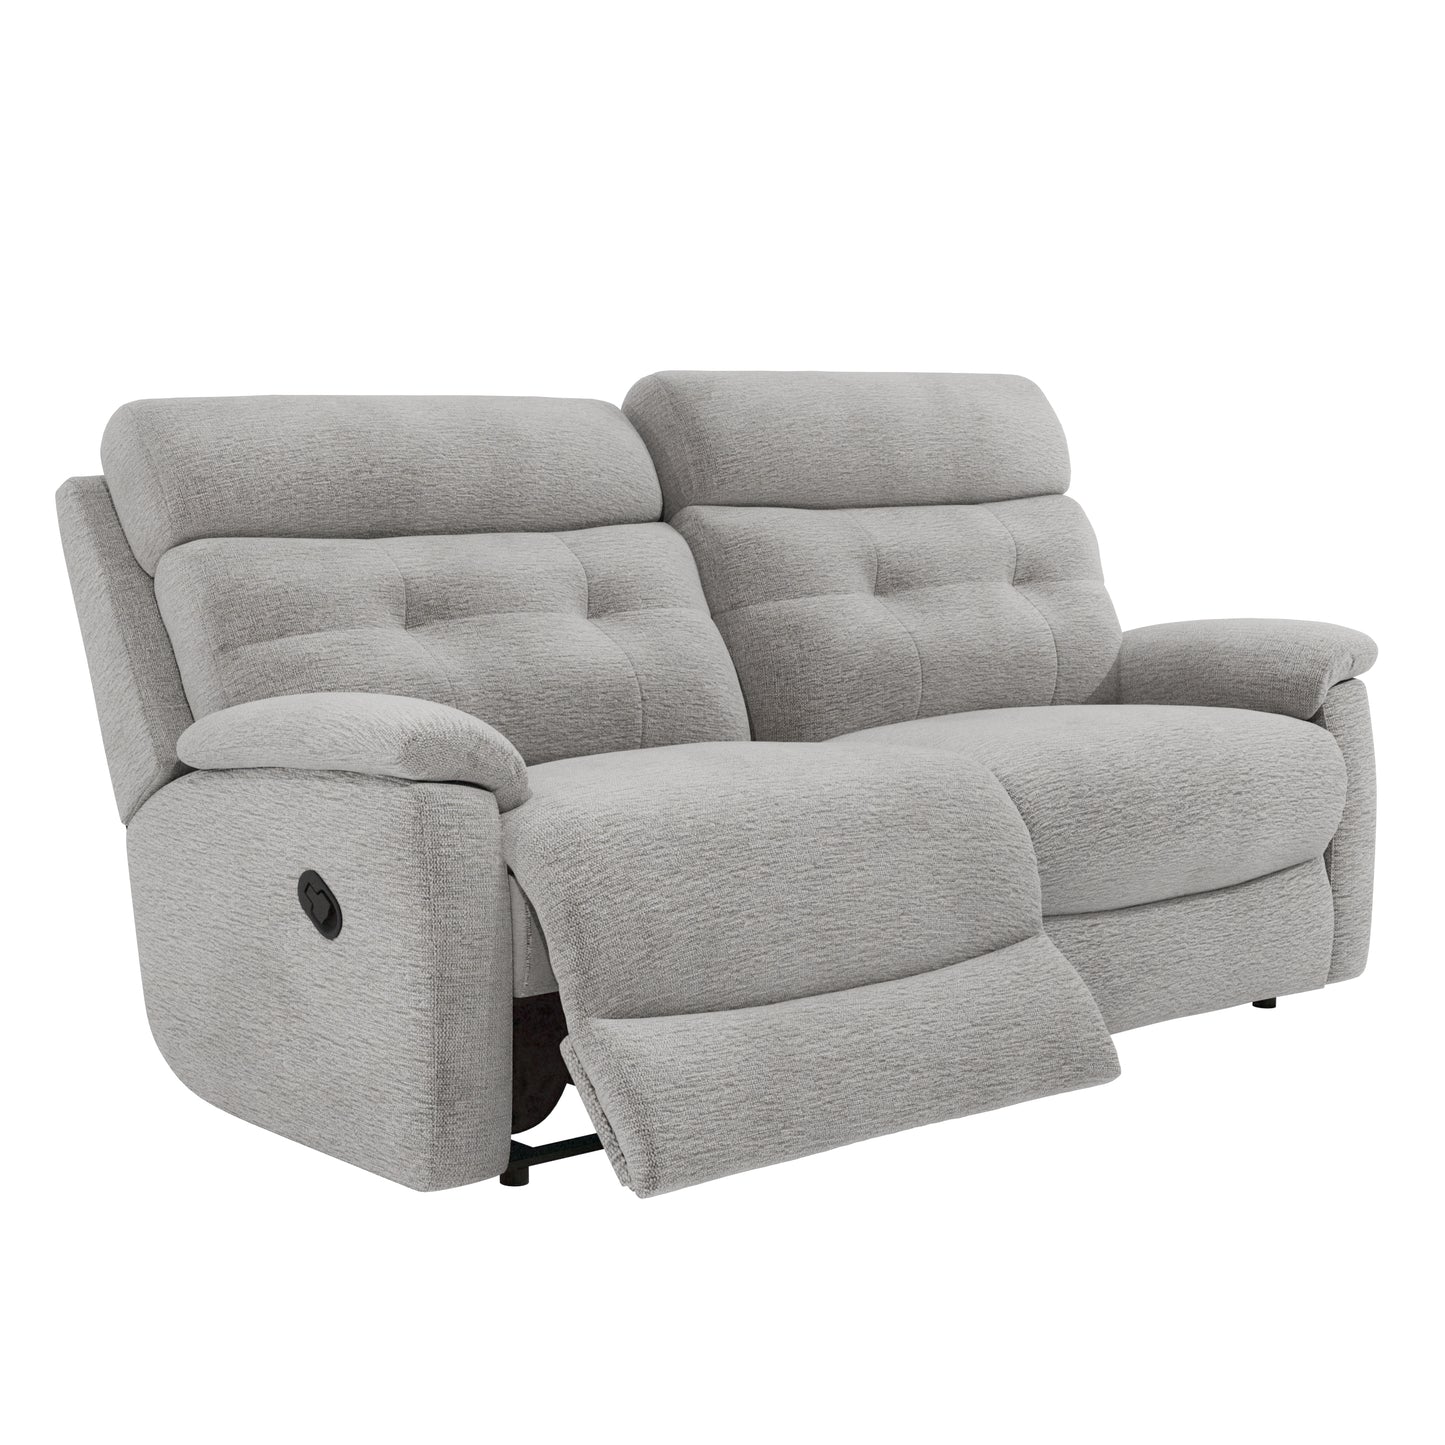 Hudson 3 Seater Manual Recliner Sofa